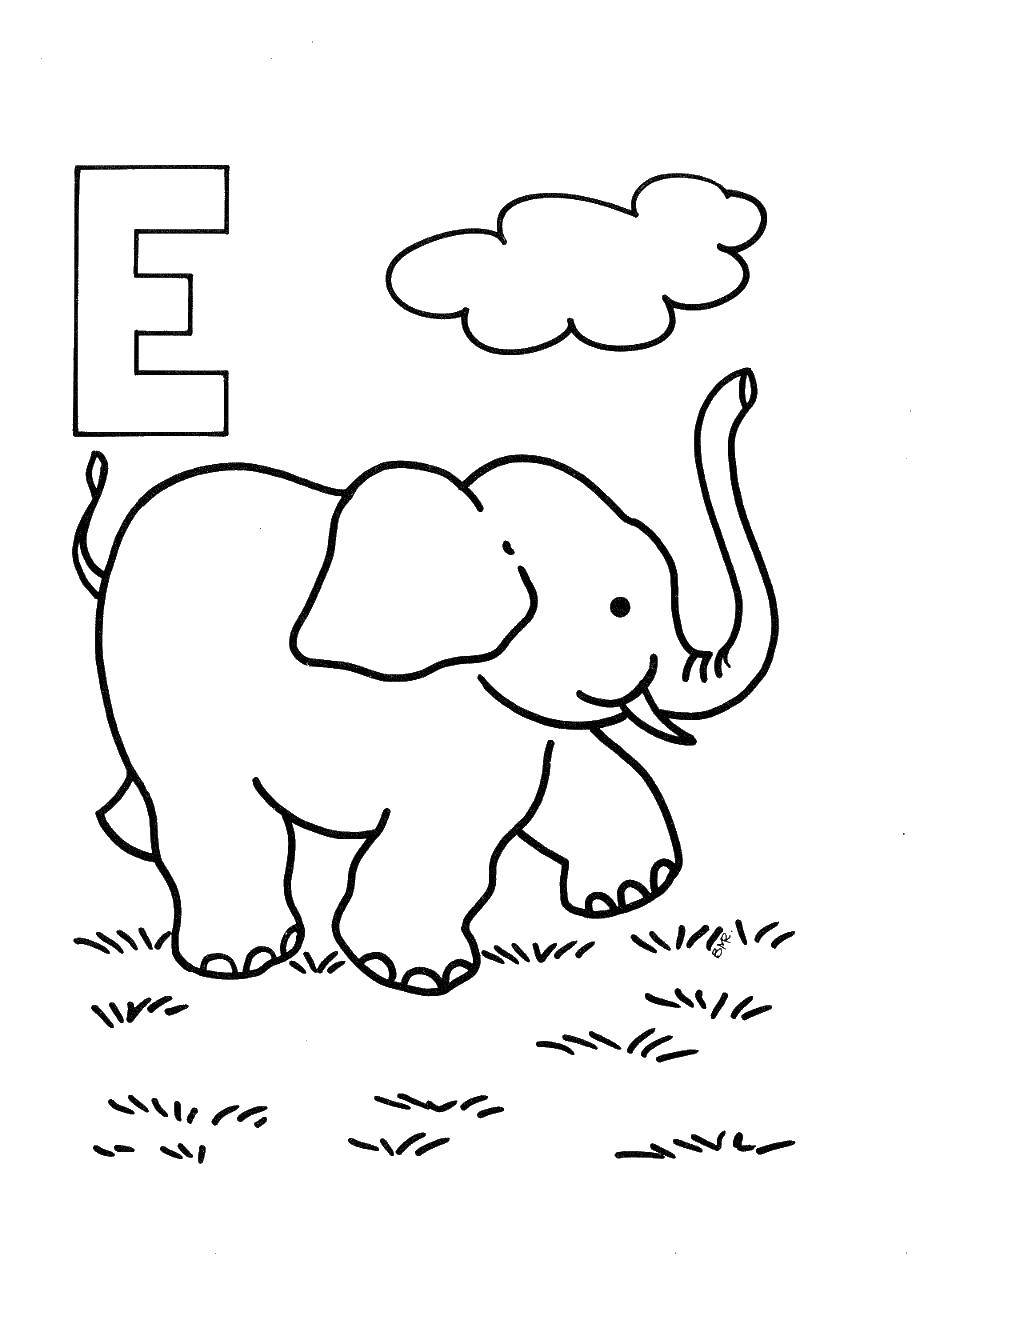 Название: Раскраска Слон. Категория: Английский алфавит. Теги: слон, буква Е.